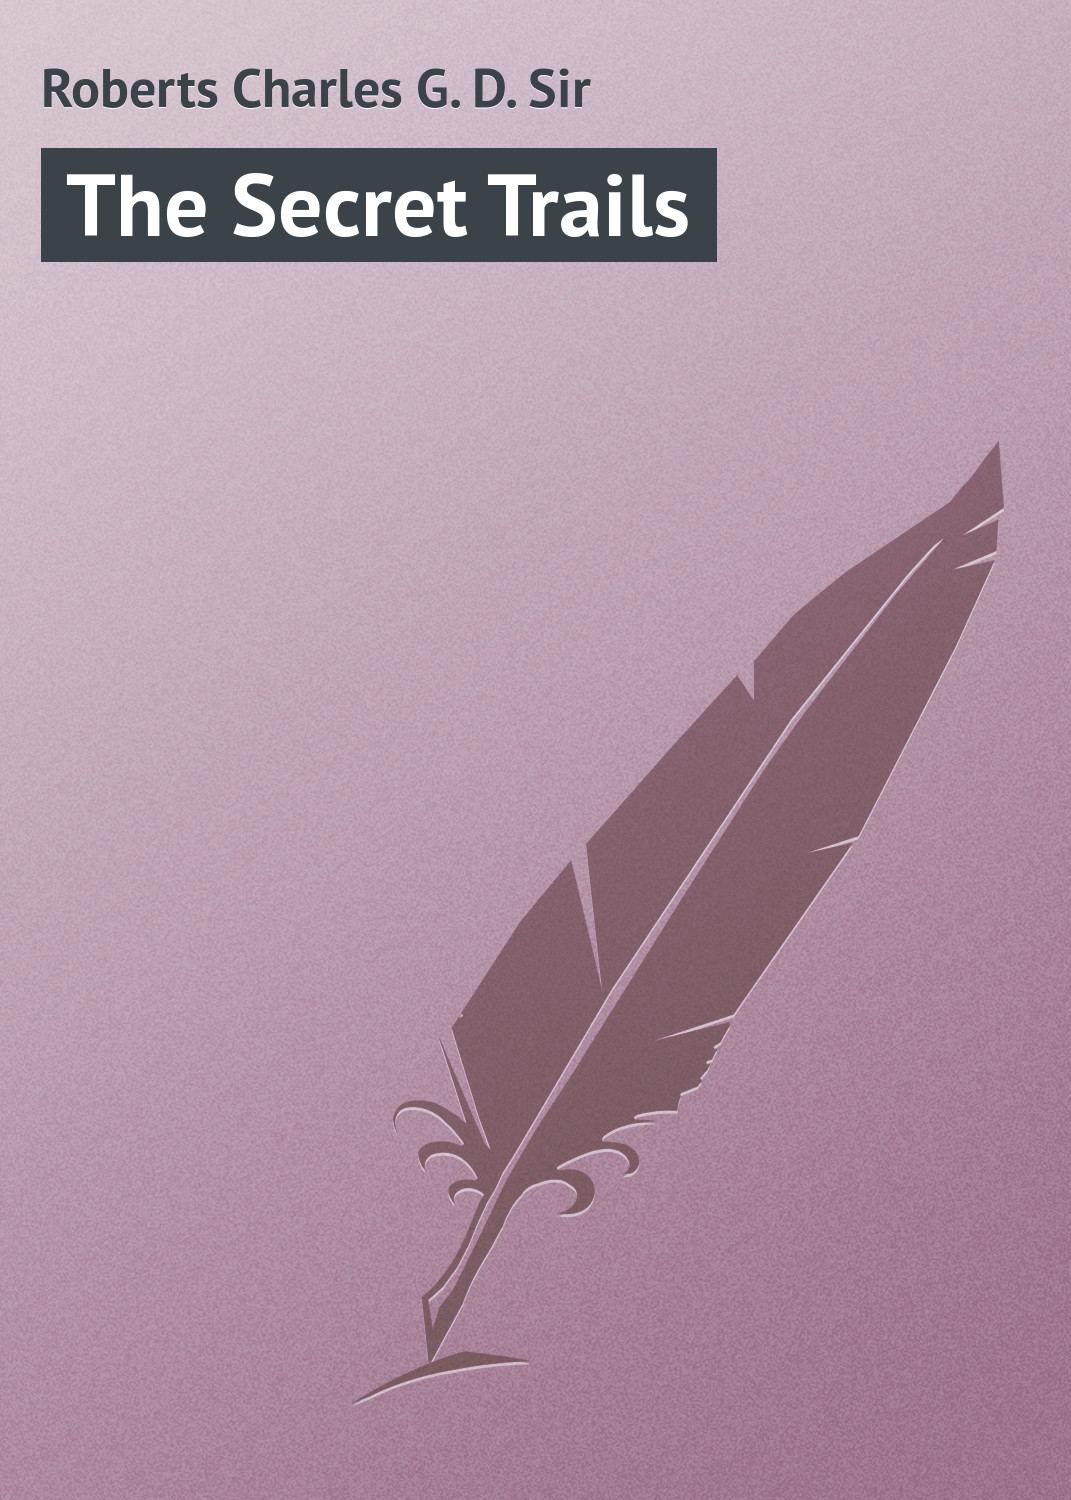 Книга The Secret Trails из серии , созданная Charles Roberts, может относится к жанру Иностранные языки, Природа и животные, Зарубежная классика, Зарубежный юмор, Анекдоты. Стоимость электронной книги The Secret Trails с идентификатором 23171547 составляет 5.99 руб.